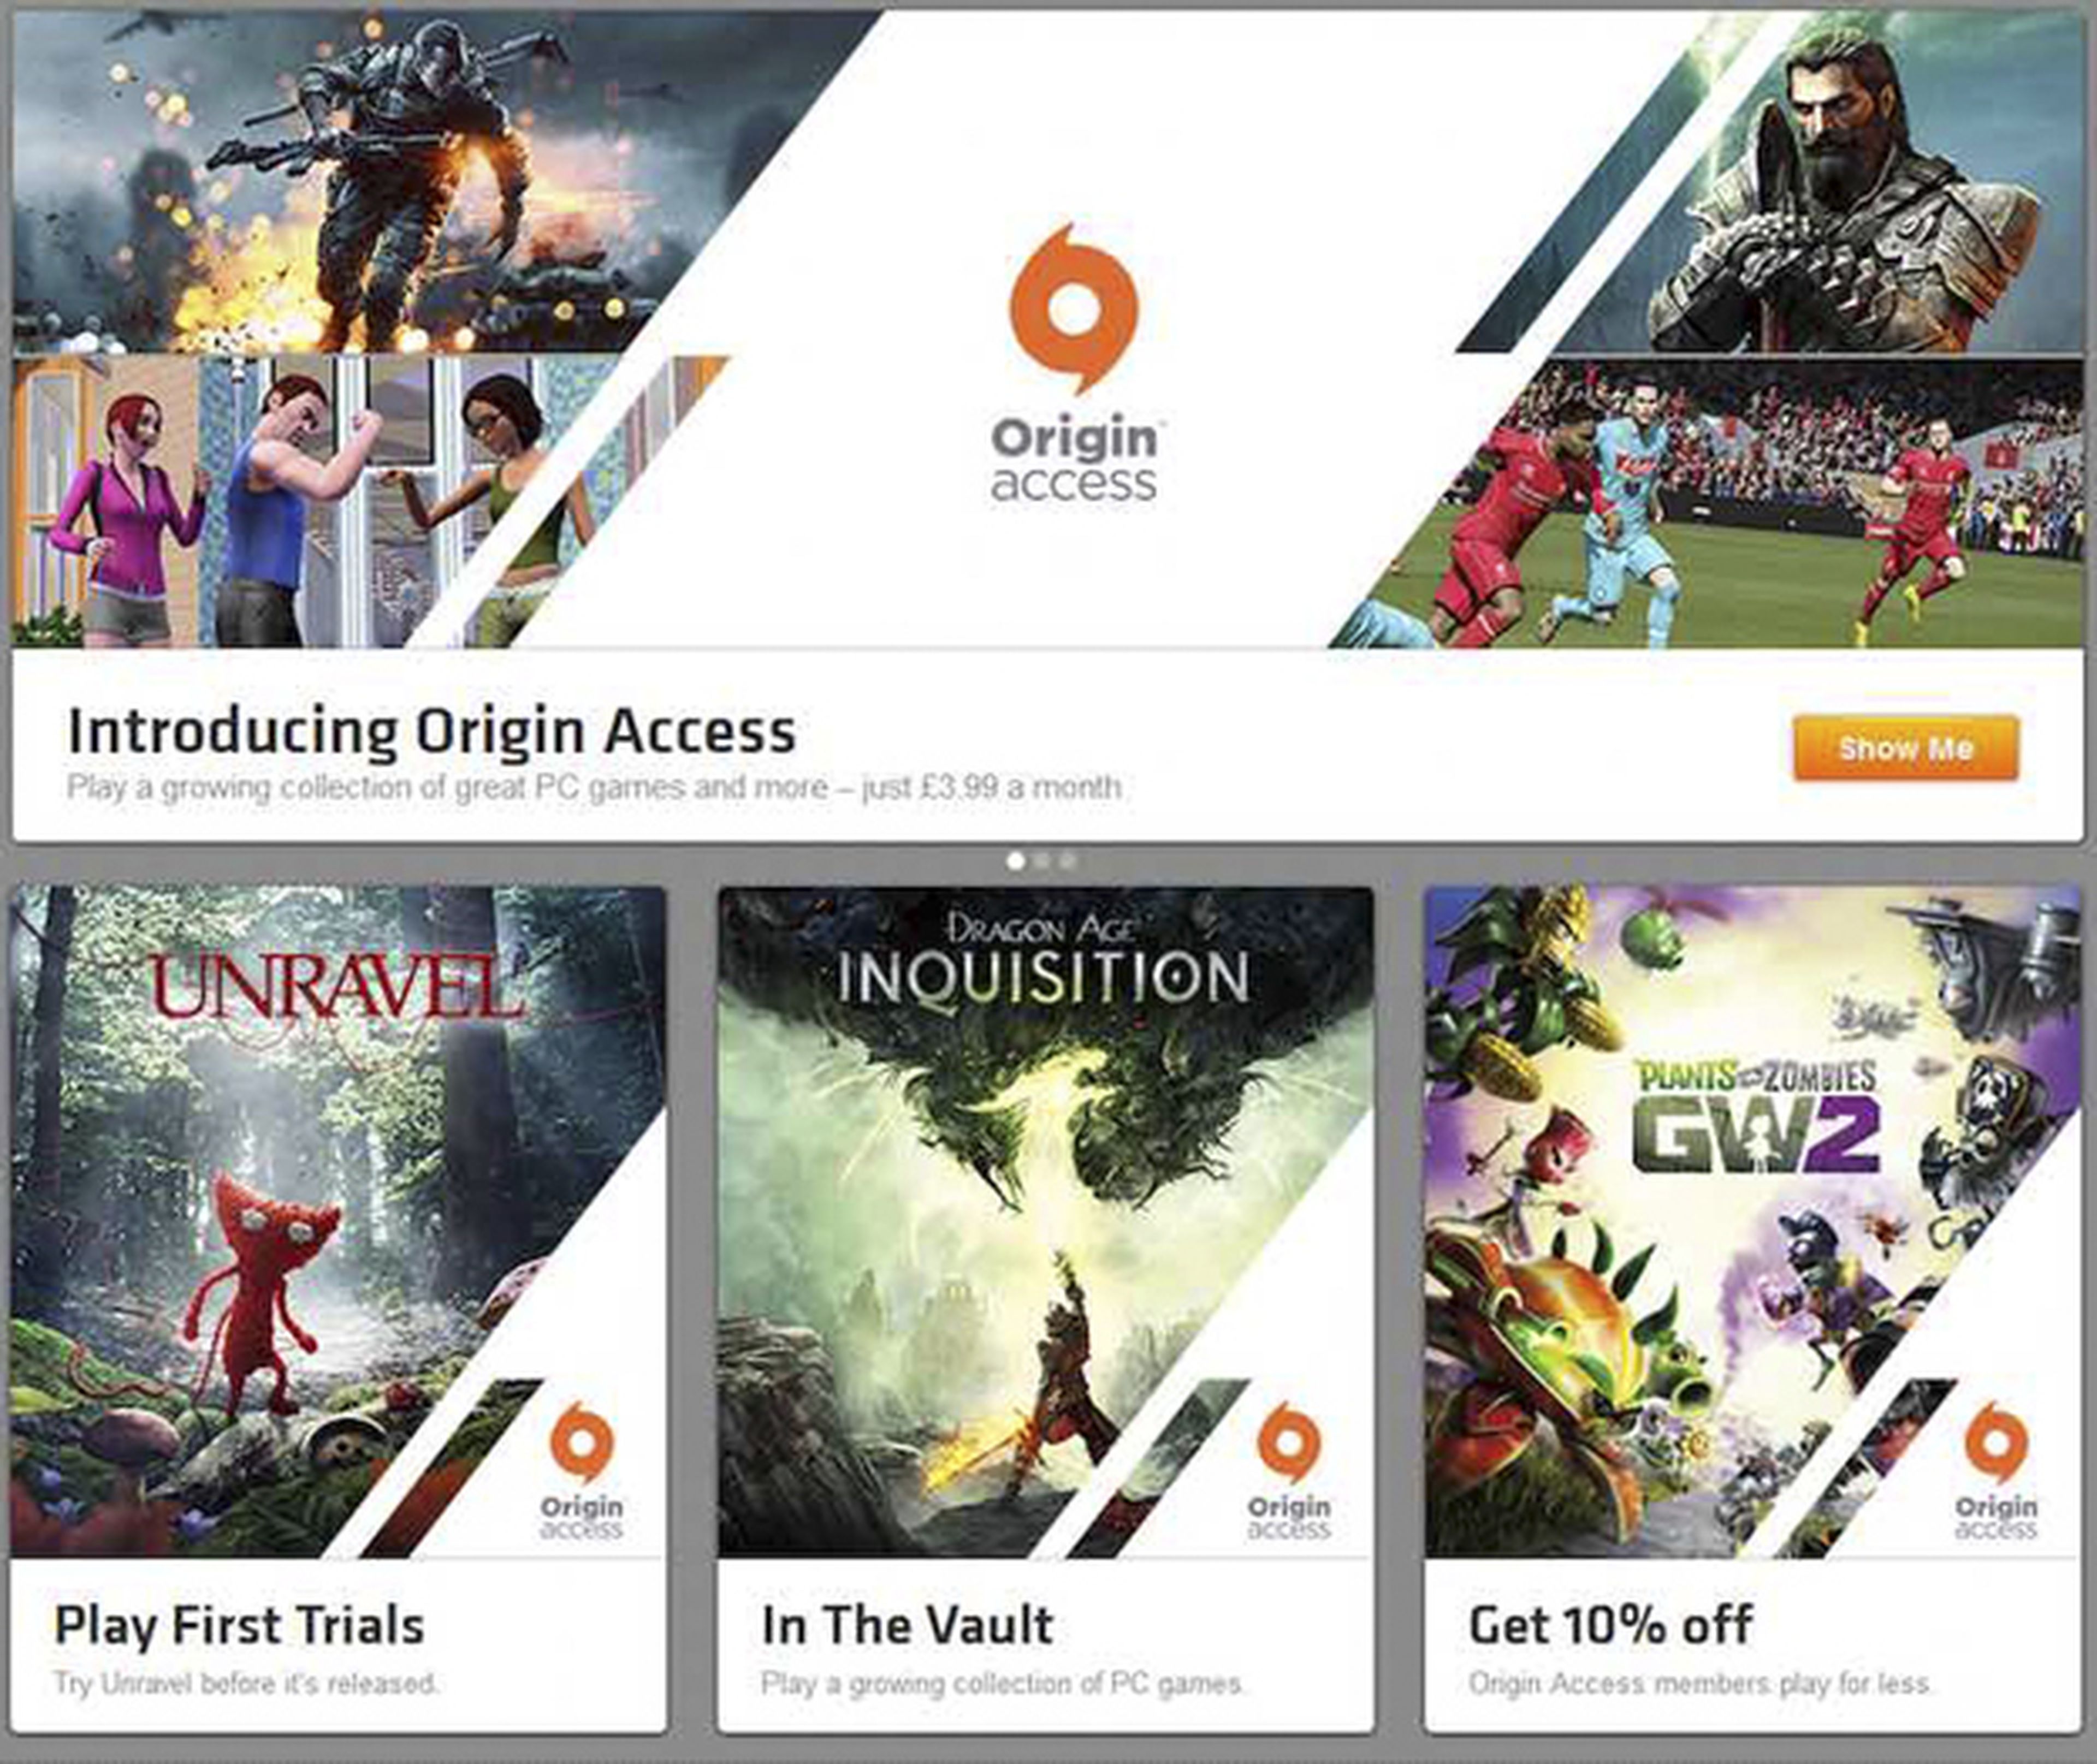 Servicio de videojuegos online de Origin, Origin Access